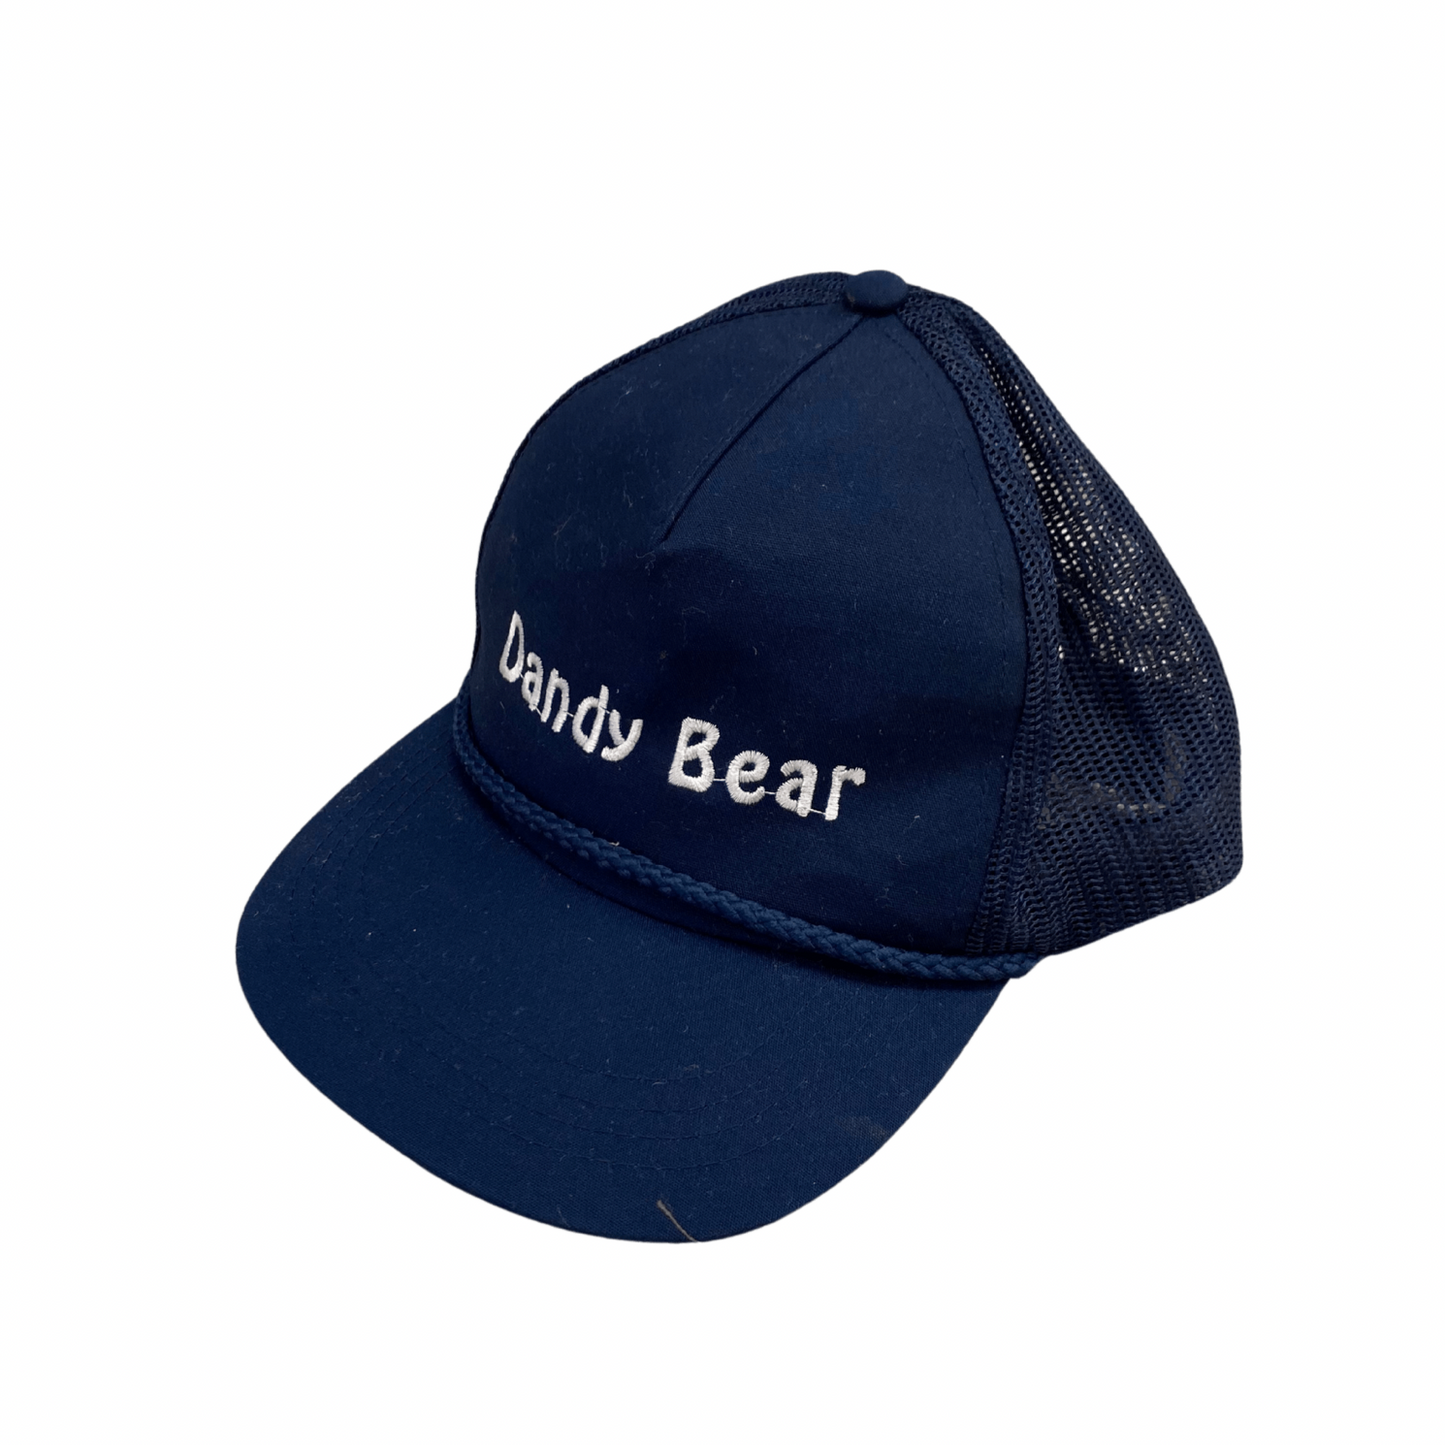 Dandy Bear Trucker Hat